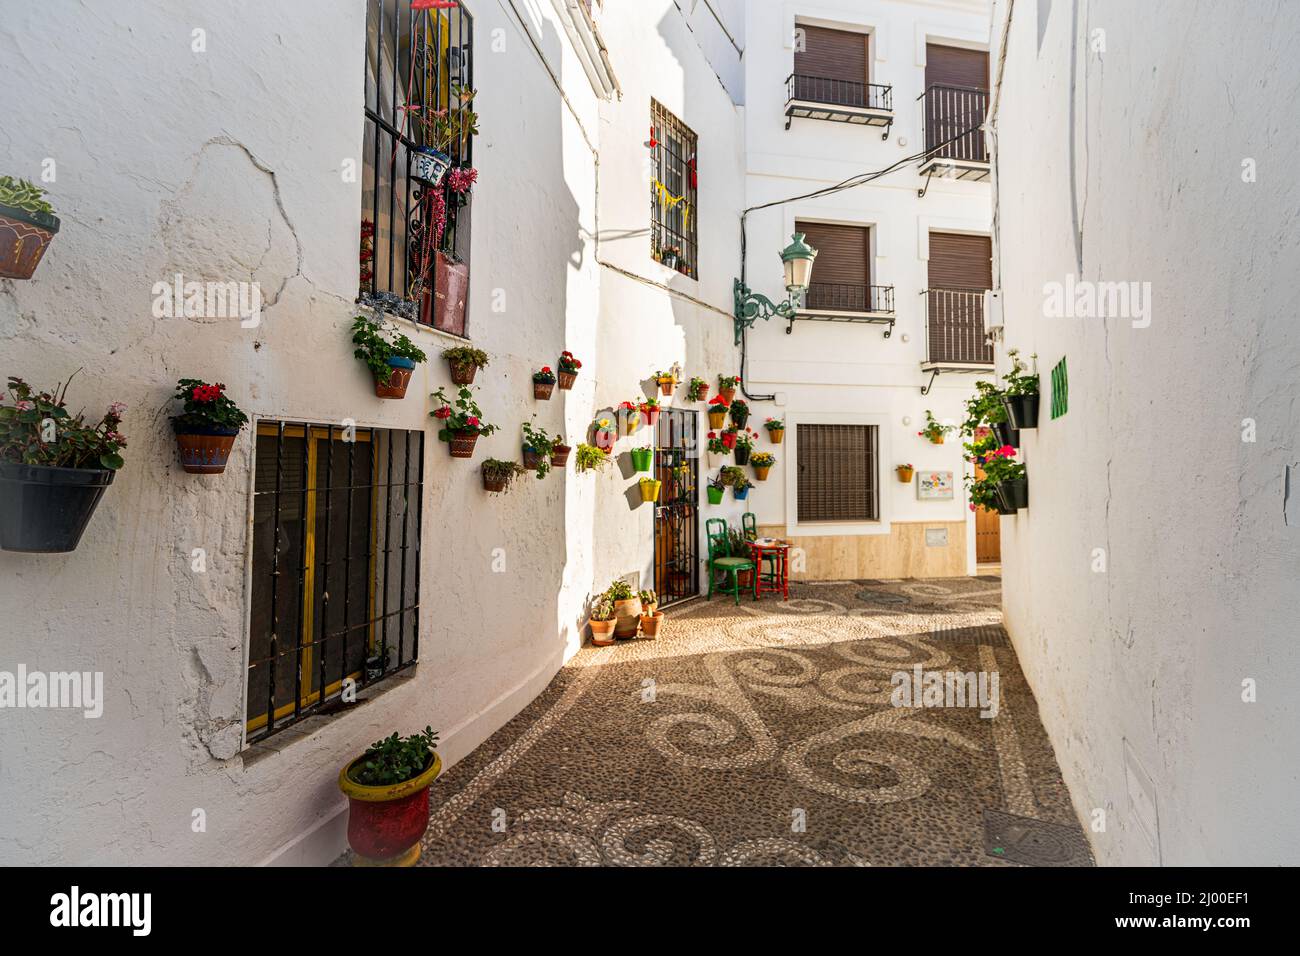 Schöne Straßen von Nerja - Malaga - Spanien. Typisch andalusisches Dorf mit weißen Häusern und kleinen Straßen. Touristisches Reiseziel ln Co Stockfoto